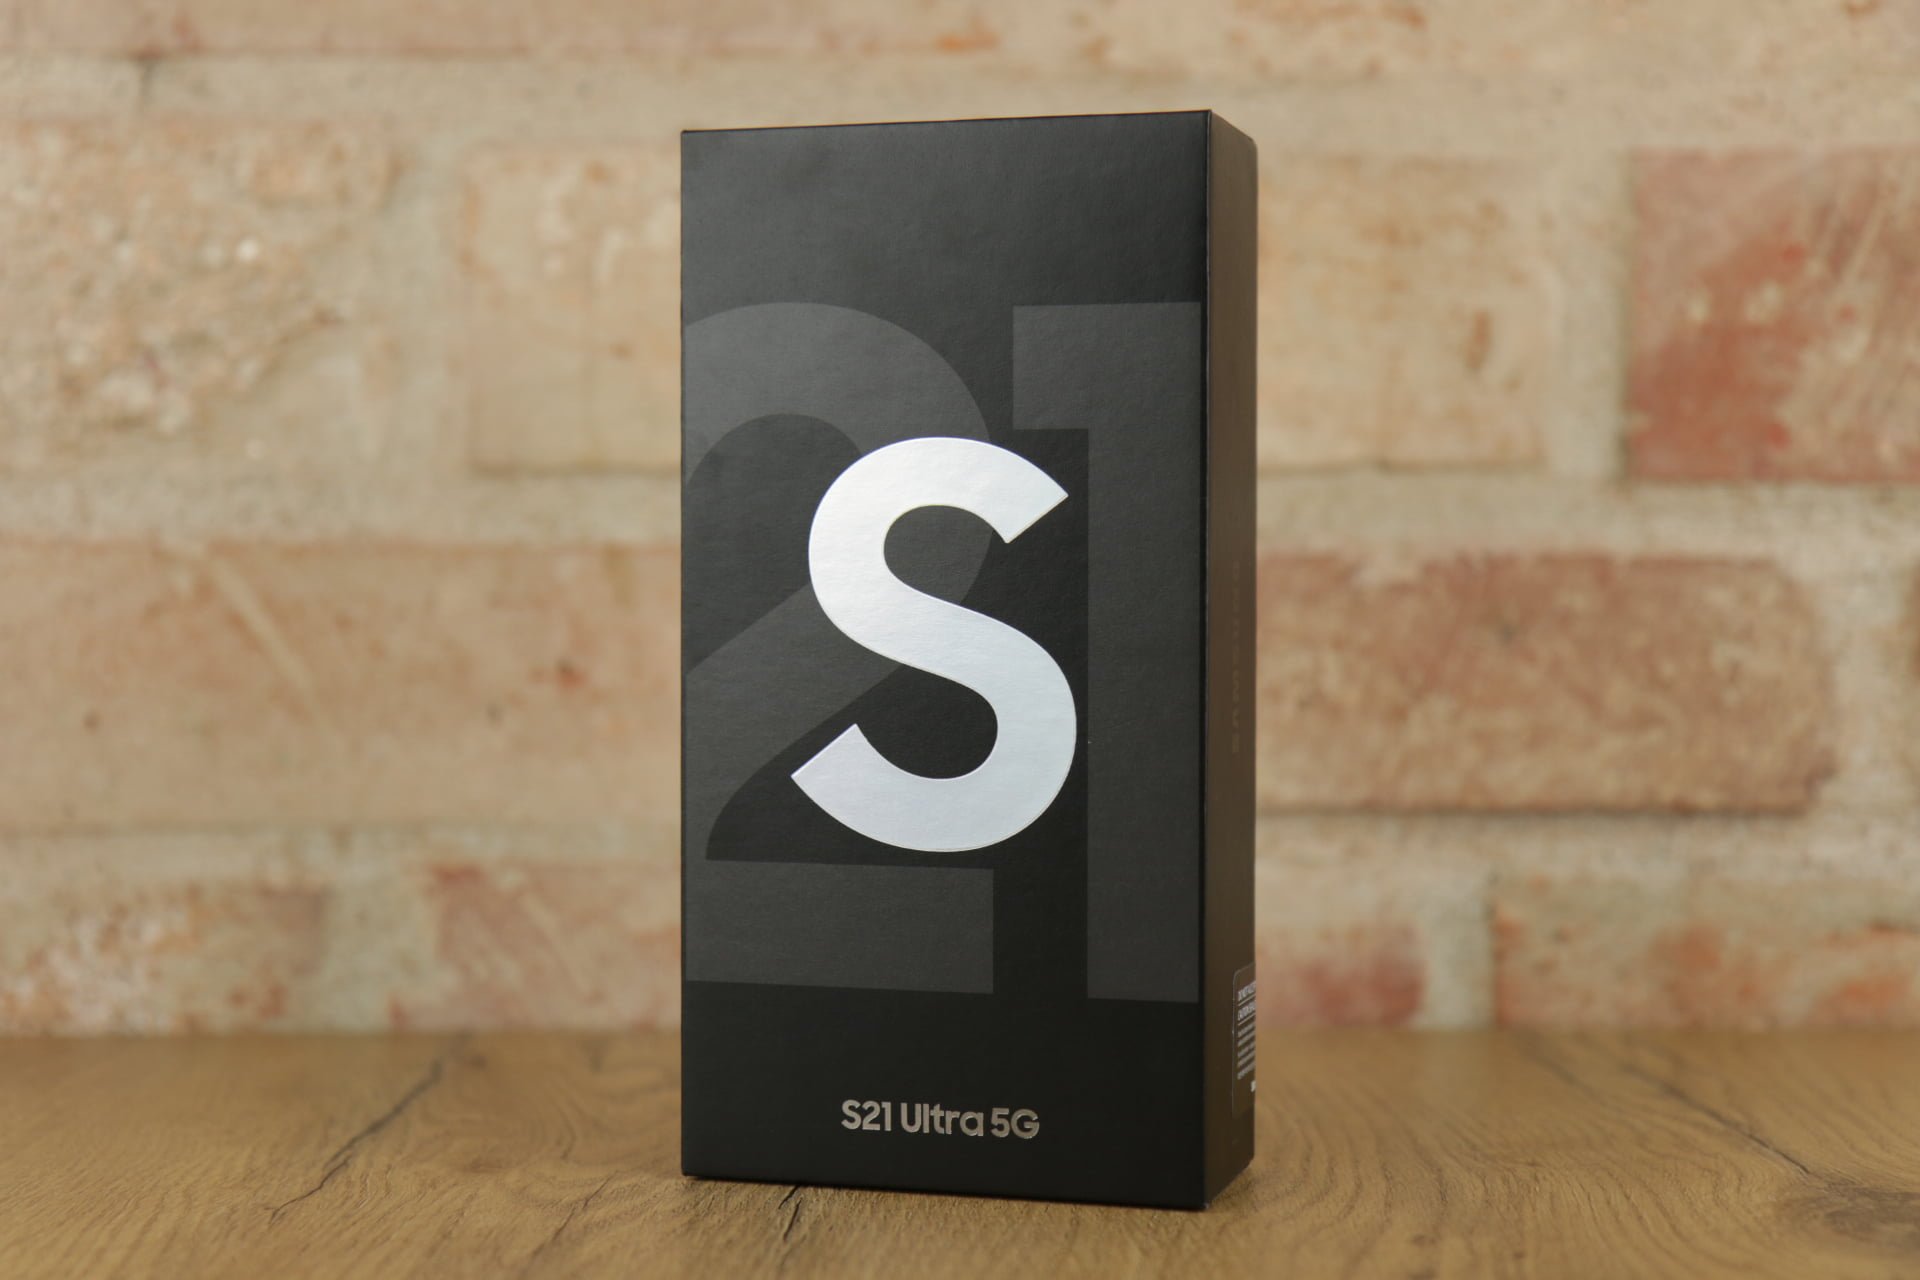 Samsung Galaxy S21 Ultra 5G recenzja test czy warto kupic